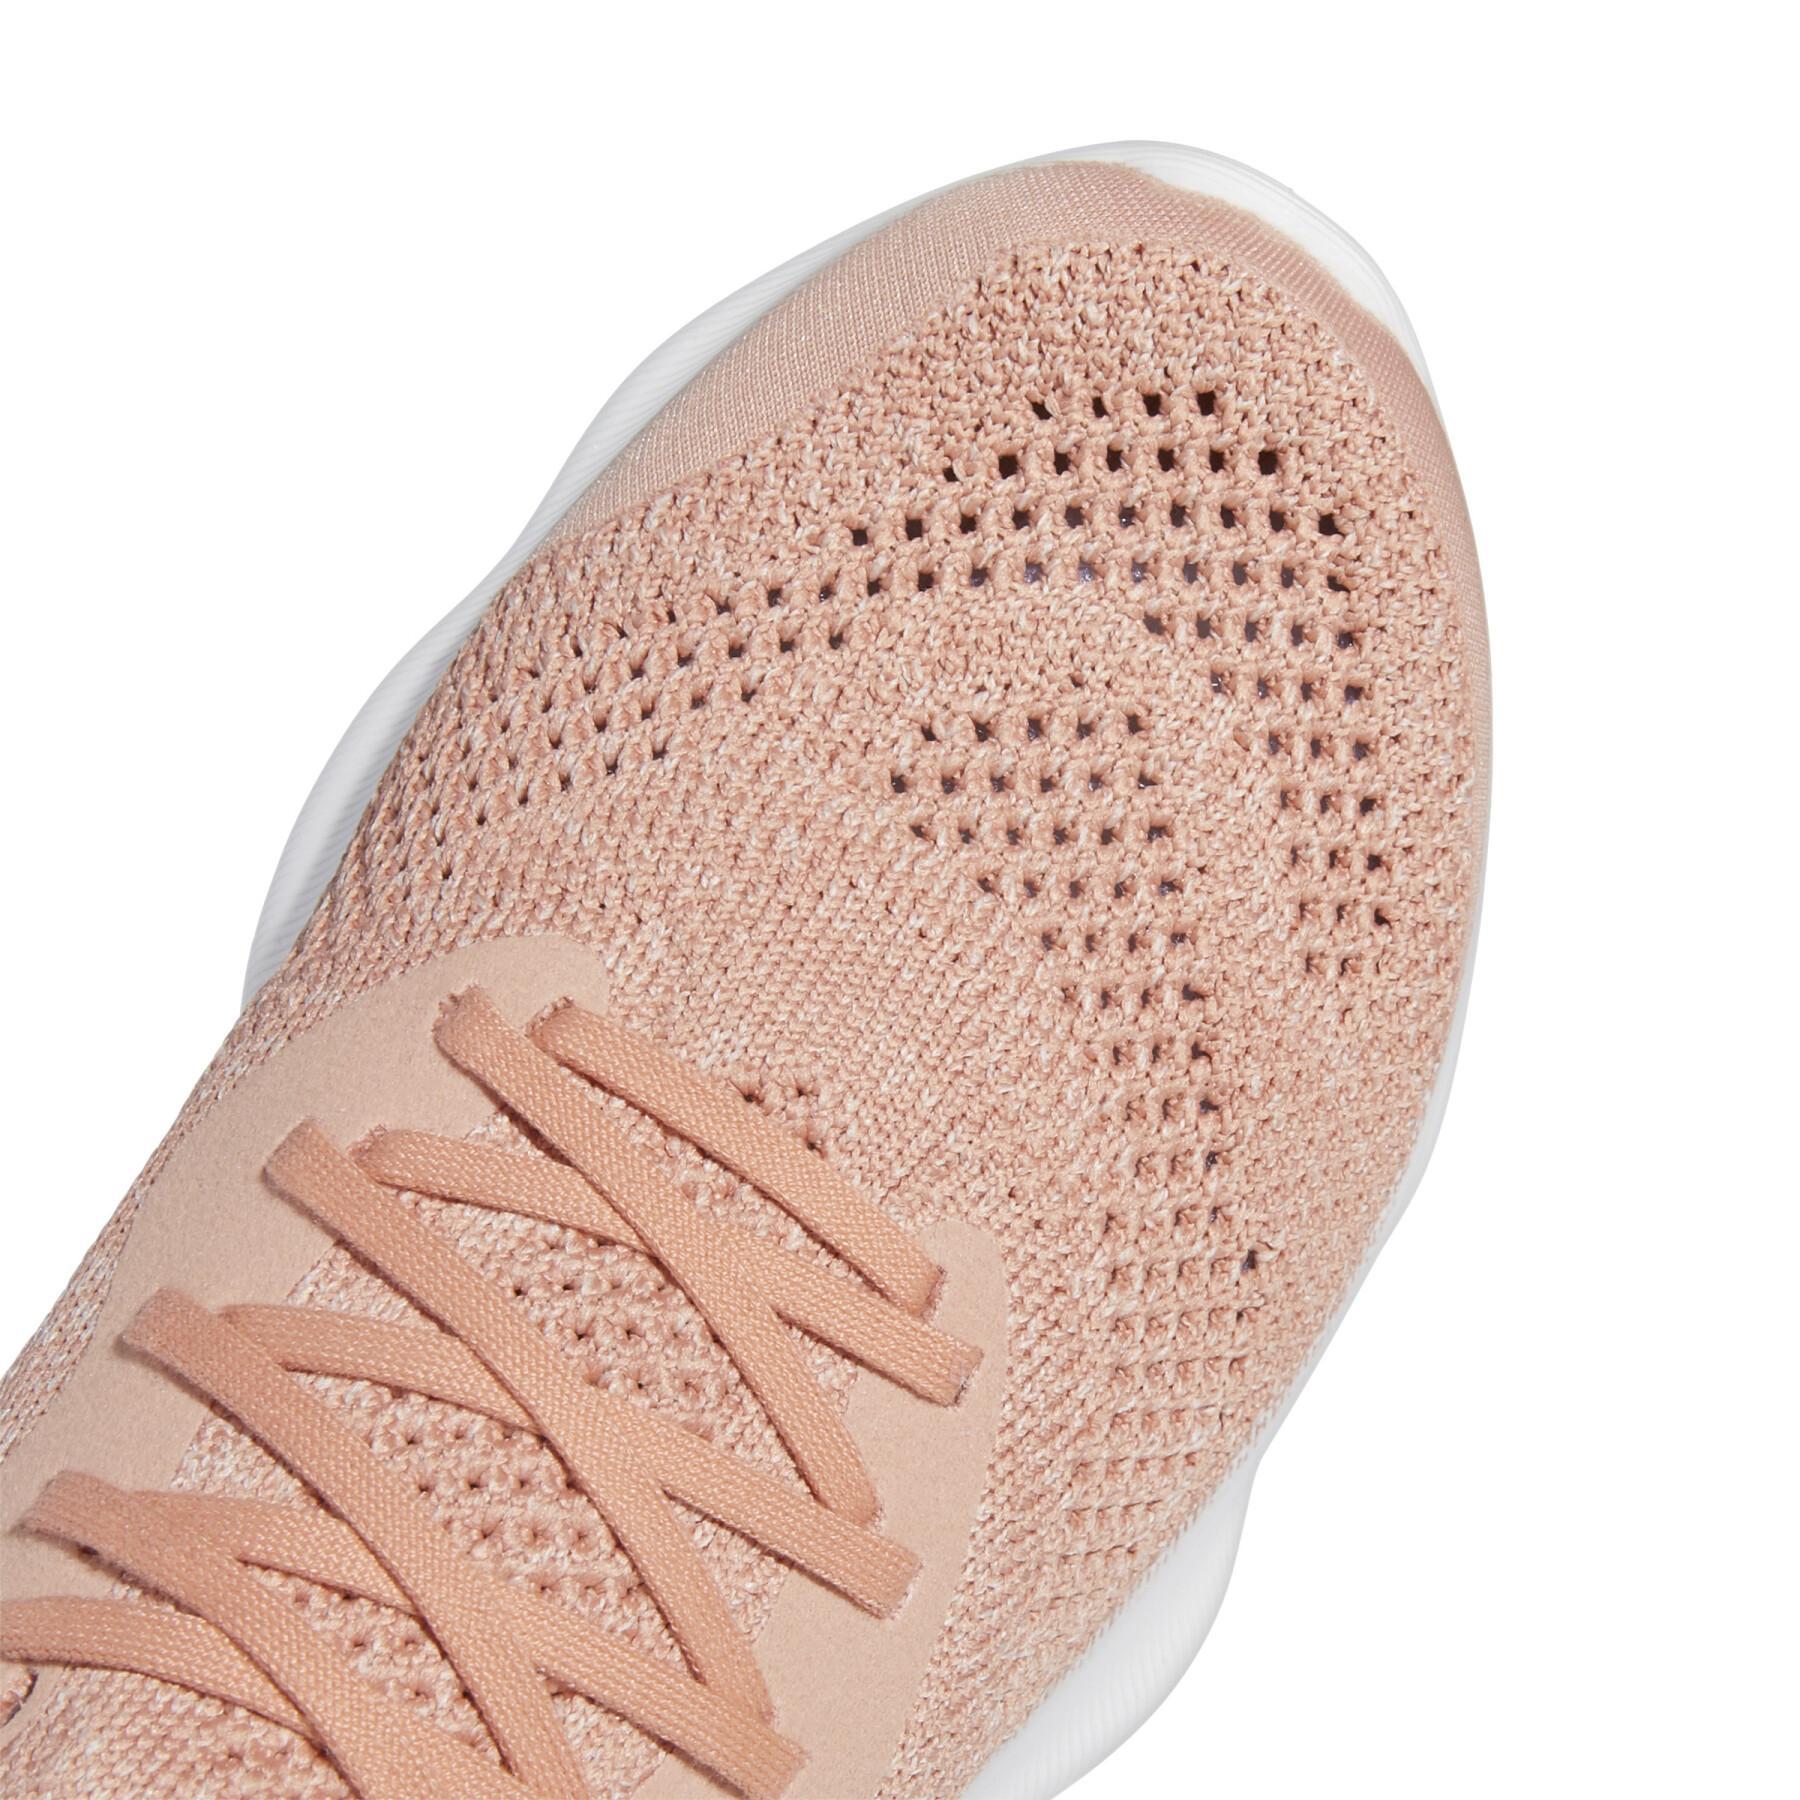 Chaussures de running femme adidas FutureNatural